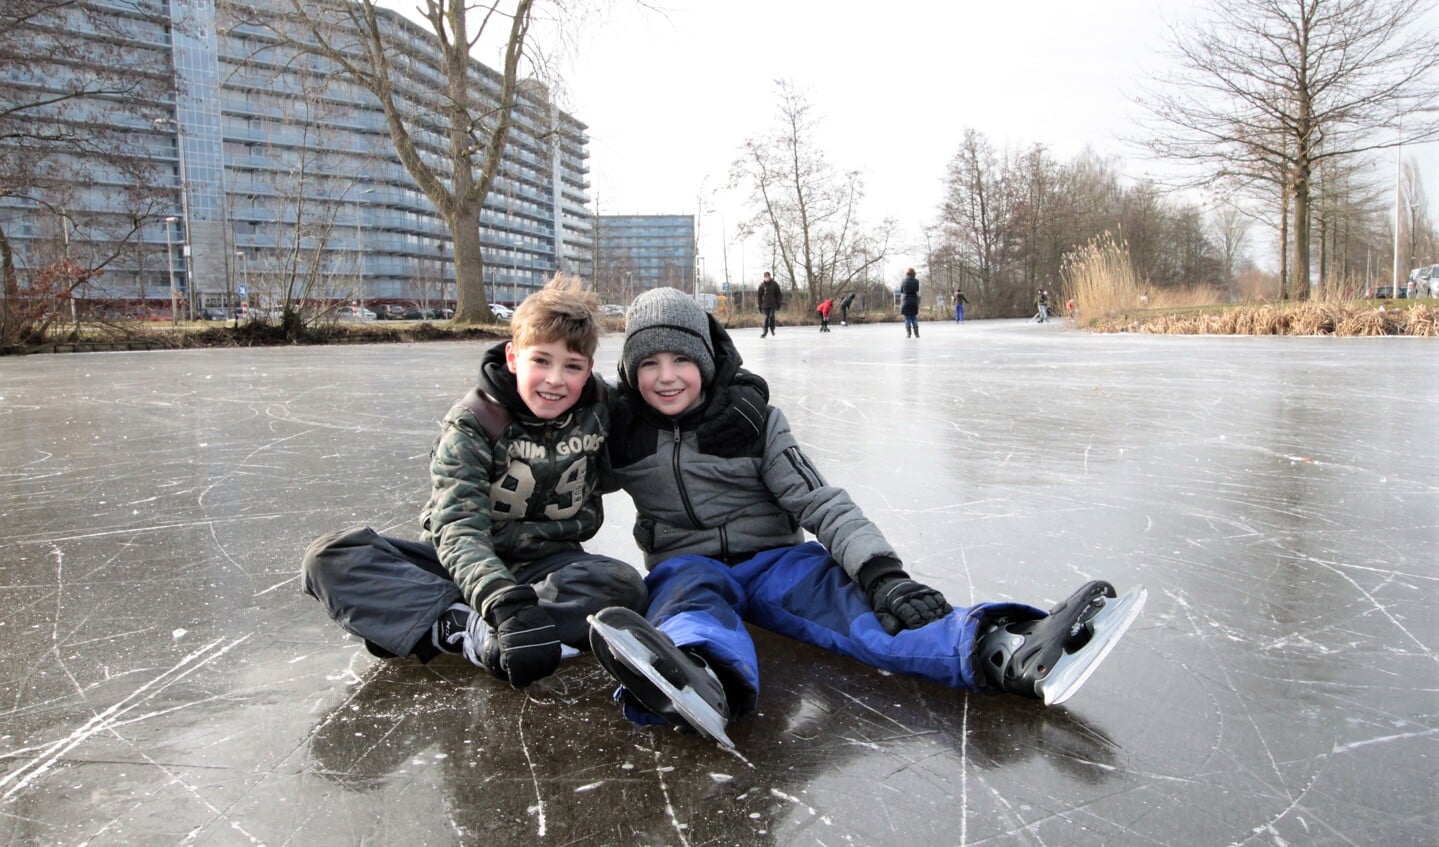 • Een ijsbaan is er niet in Krimpen aan den IJssel. Gelukkig konden deze jongens nog wel de ijzers onderbinden om te schaatsen op een slootje langs de Populierenlaan.